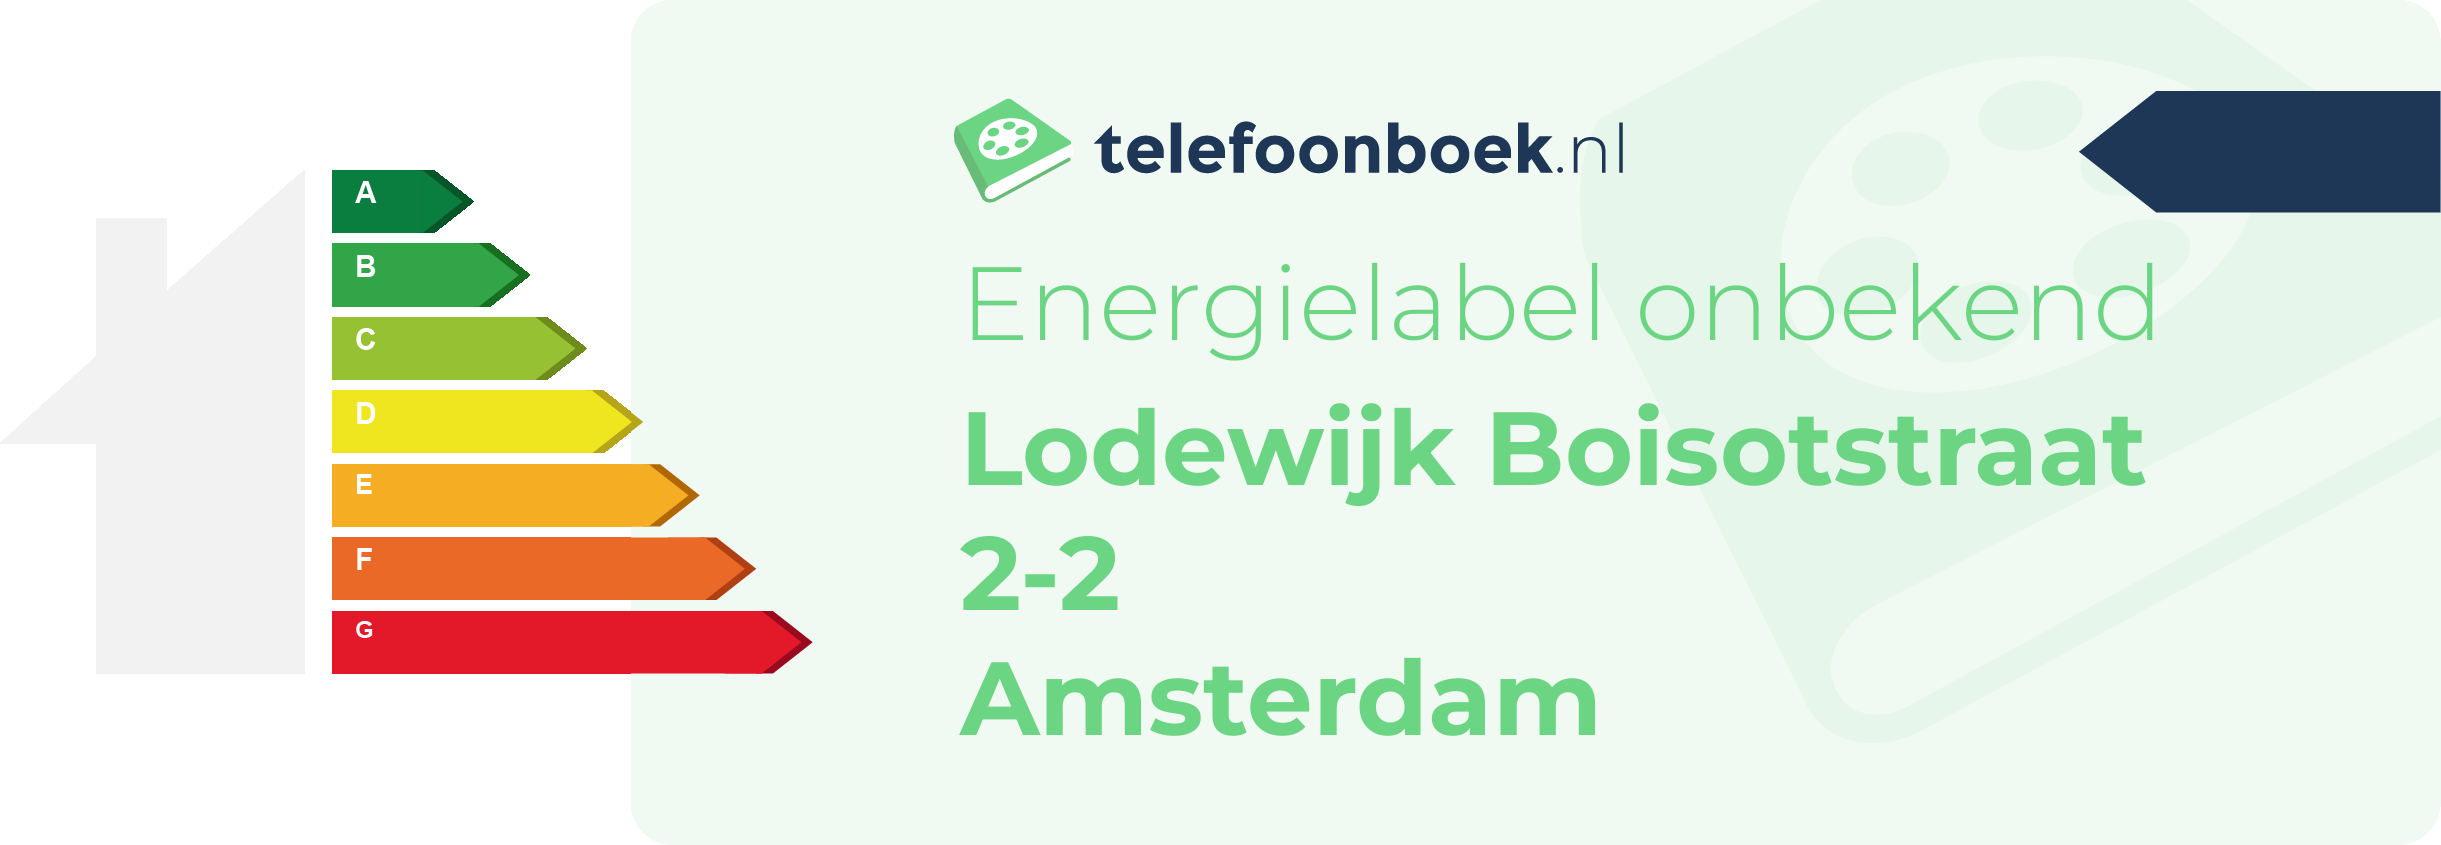 Energielabel Lodewijk Boisotstraat 2-2 Amsterdam